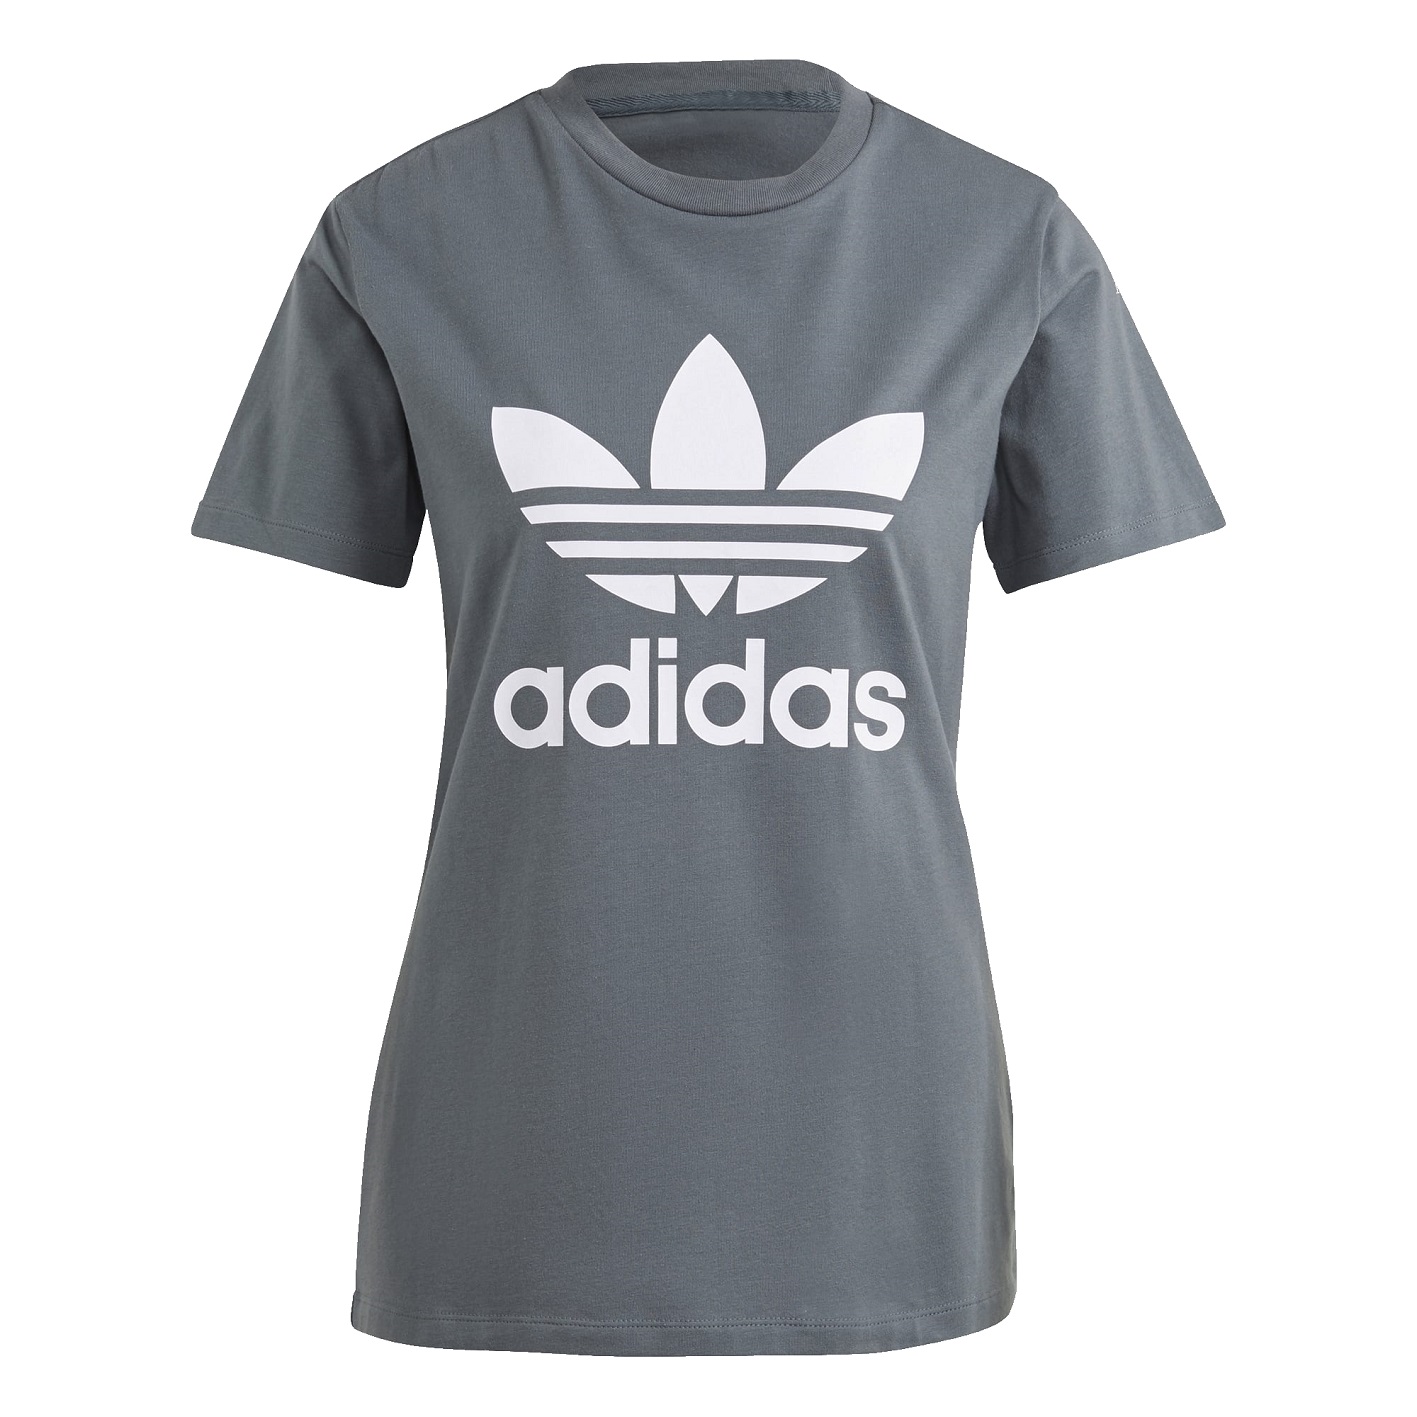 ☆ Adidas Trefoil Damen T-Shirt blau - hier bestellen!